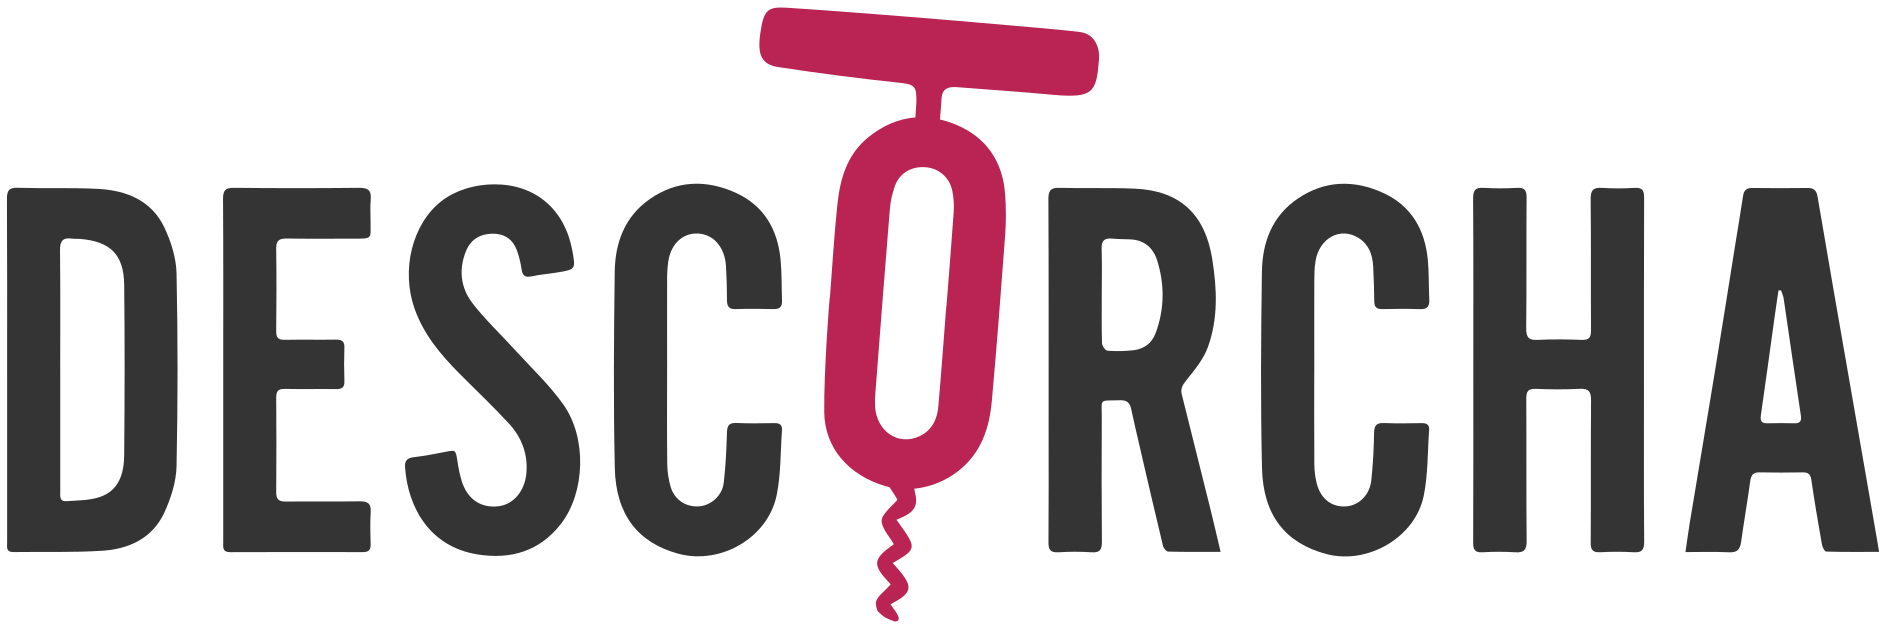 Logo Descorcha